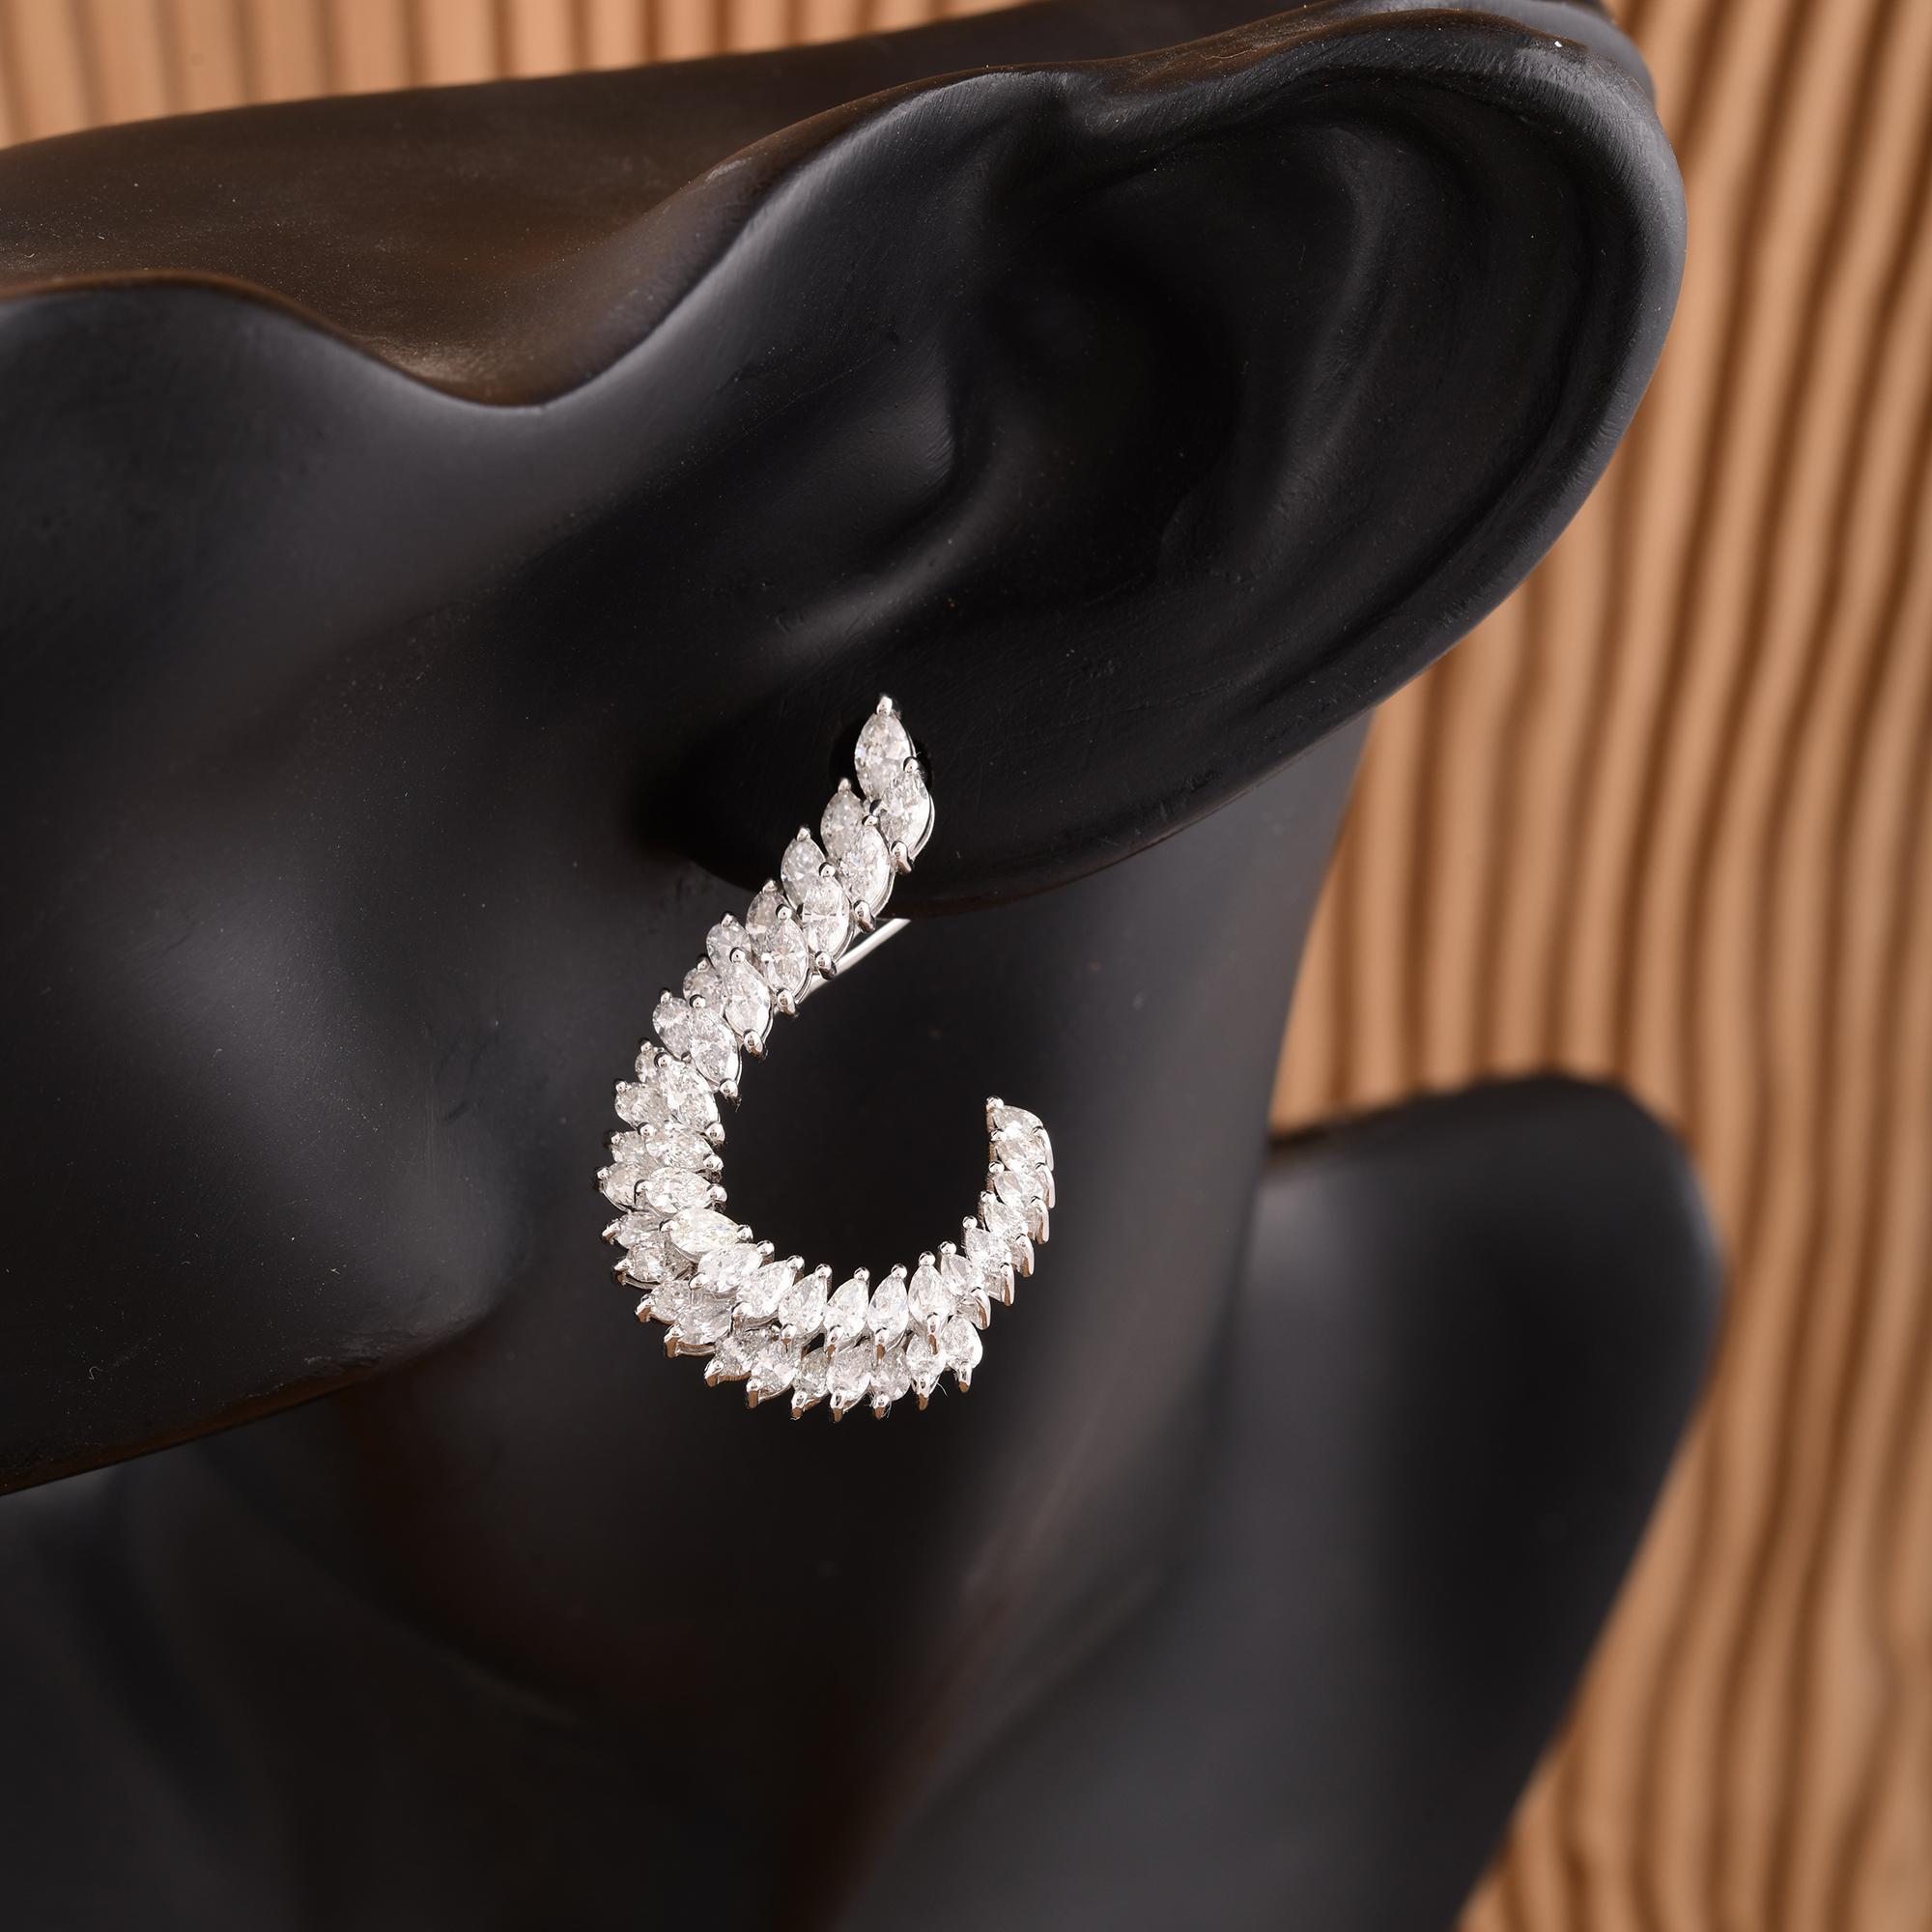 Chaque boucle d'oreille est ornée d'un éblouissant diamant taillé en poire, réputé pour sa forme distinctive en goutte d'eau qui respire la grâce et le raffinement. Les diamants sont d'une clarté exceptionnelle, garantissant un éclat hypnotique qui